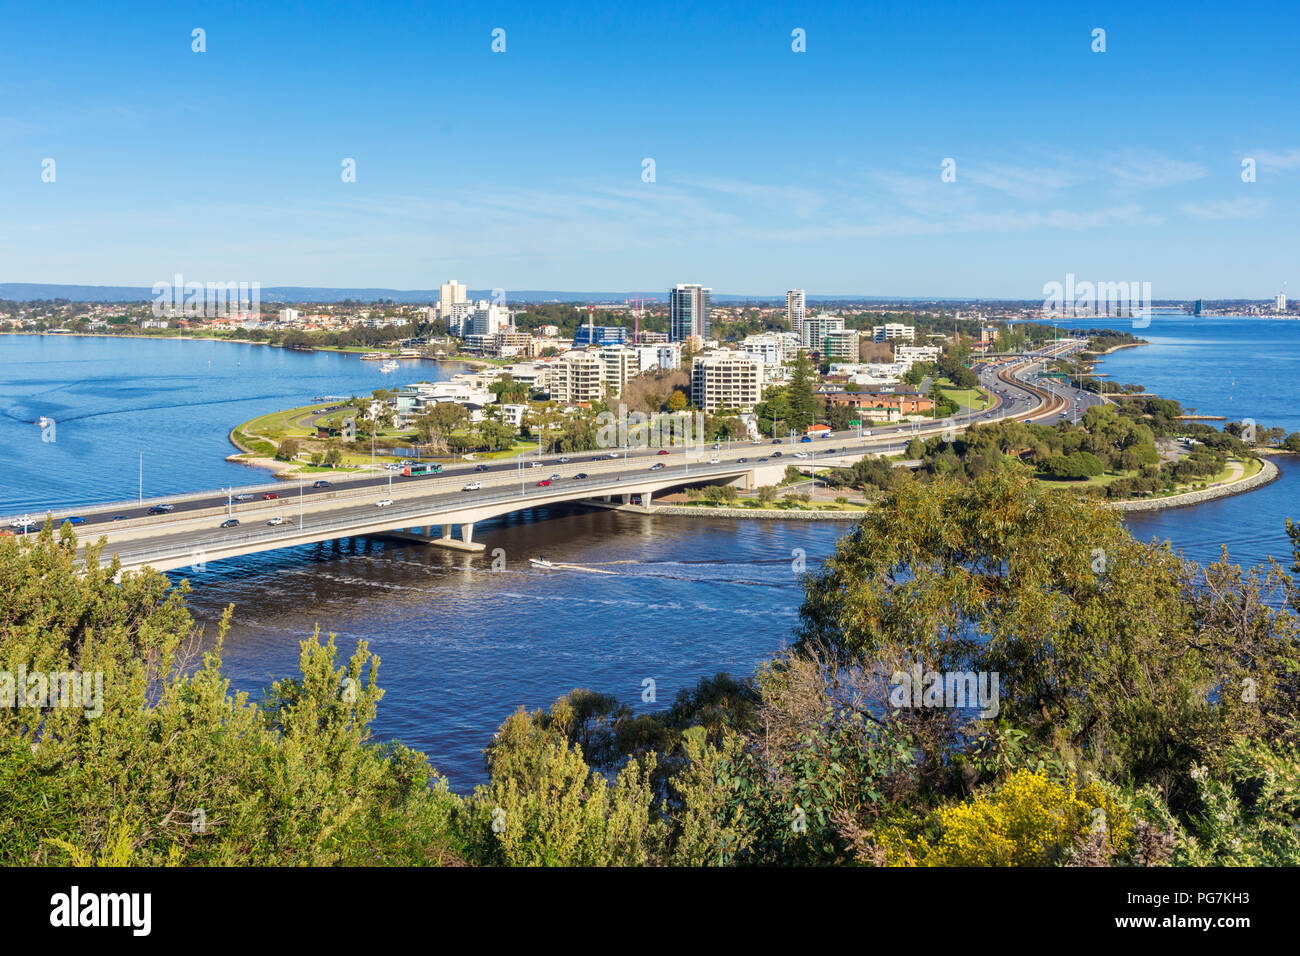 Blick auf die Narrows Bridge und den Kwinana Freeway dem schlangenpfad Swan River Vergangenheit South Perth und Como, Western Australia Stockfoto